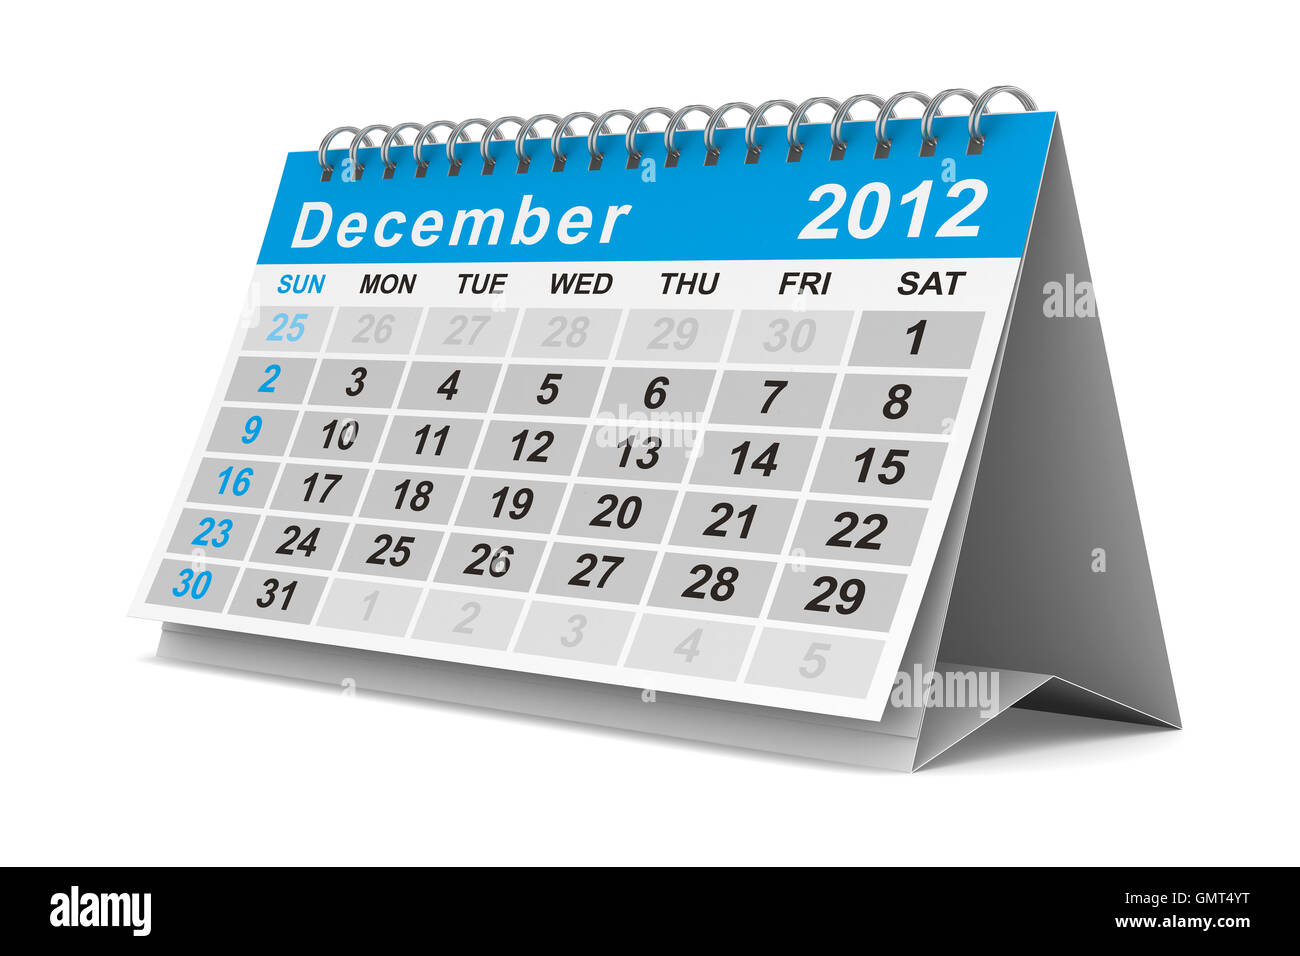 Calendrier de l'année 2012. Décembre. Image 3D isolés Banque D'Images